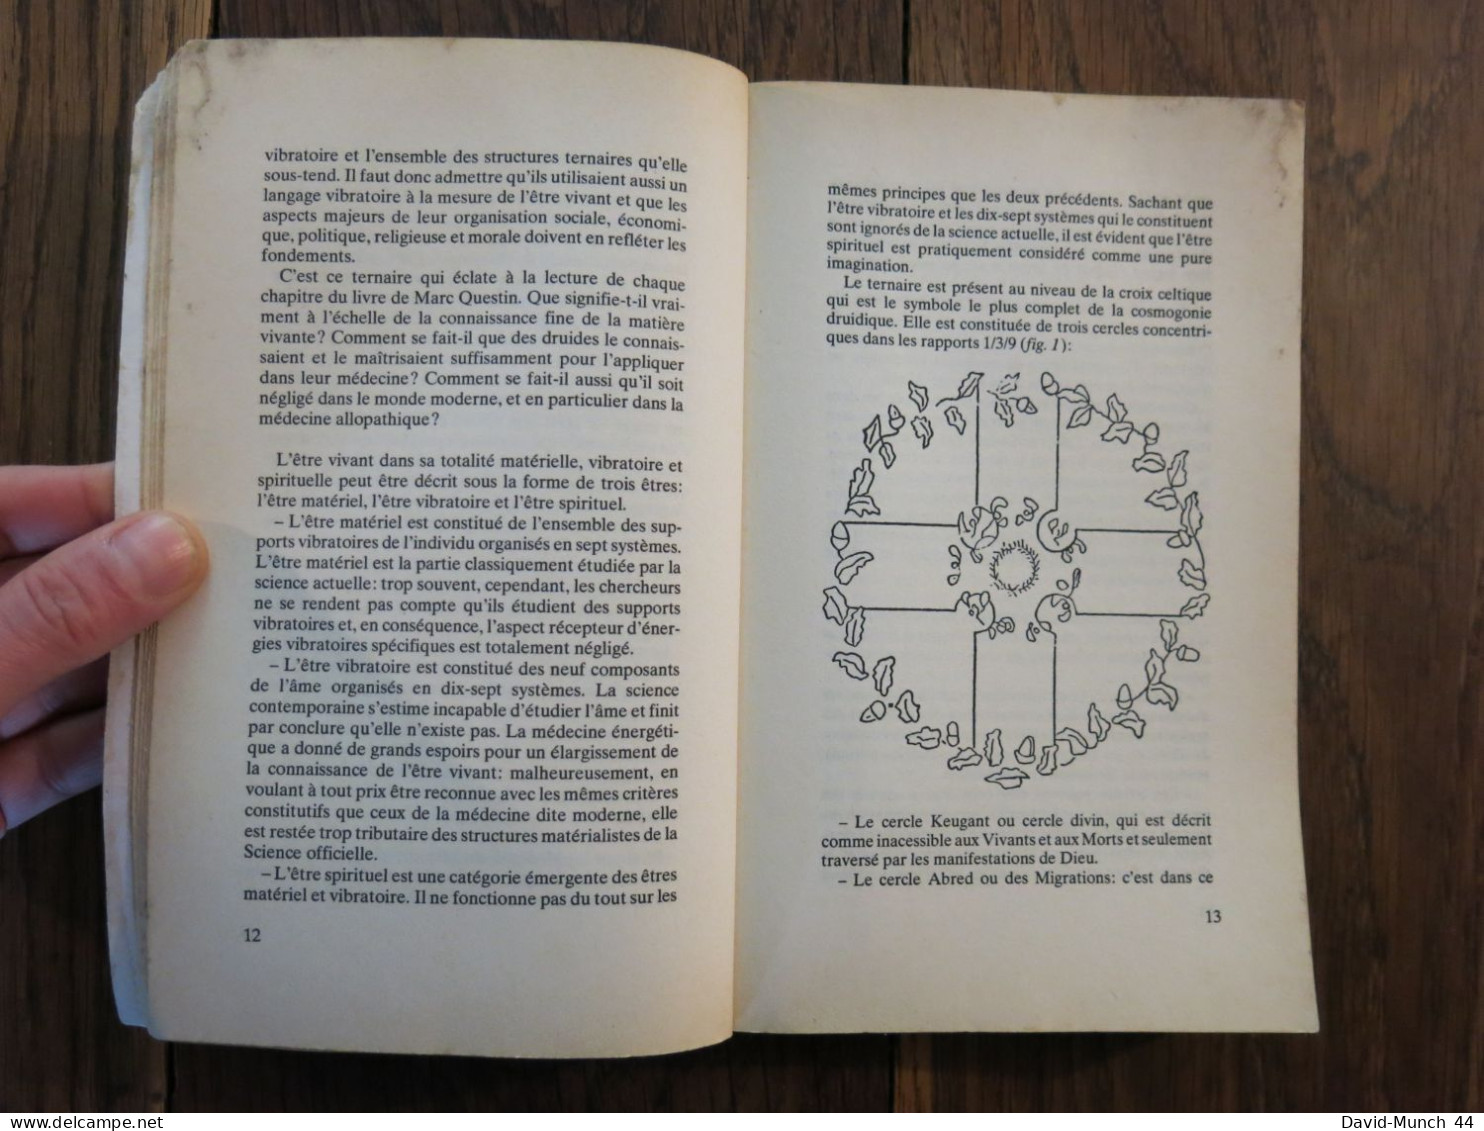 La médecine druidique de Marc Questin. L'Age du Verseau, New Age. 1990